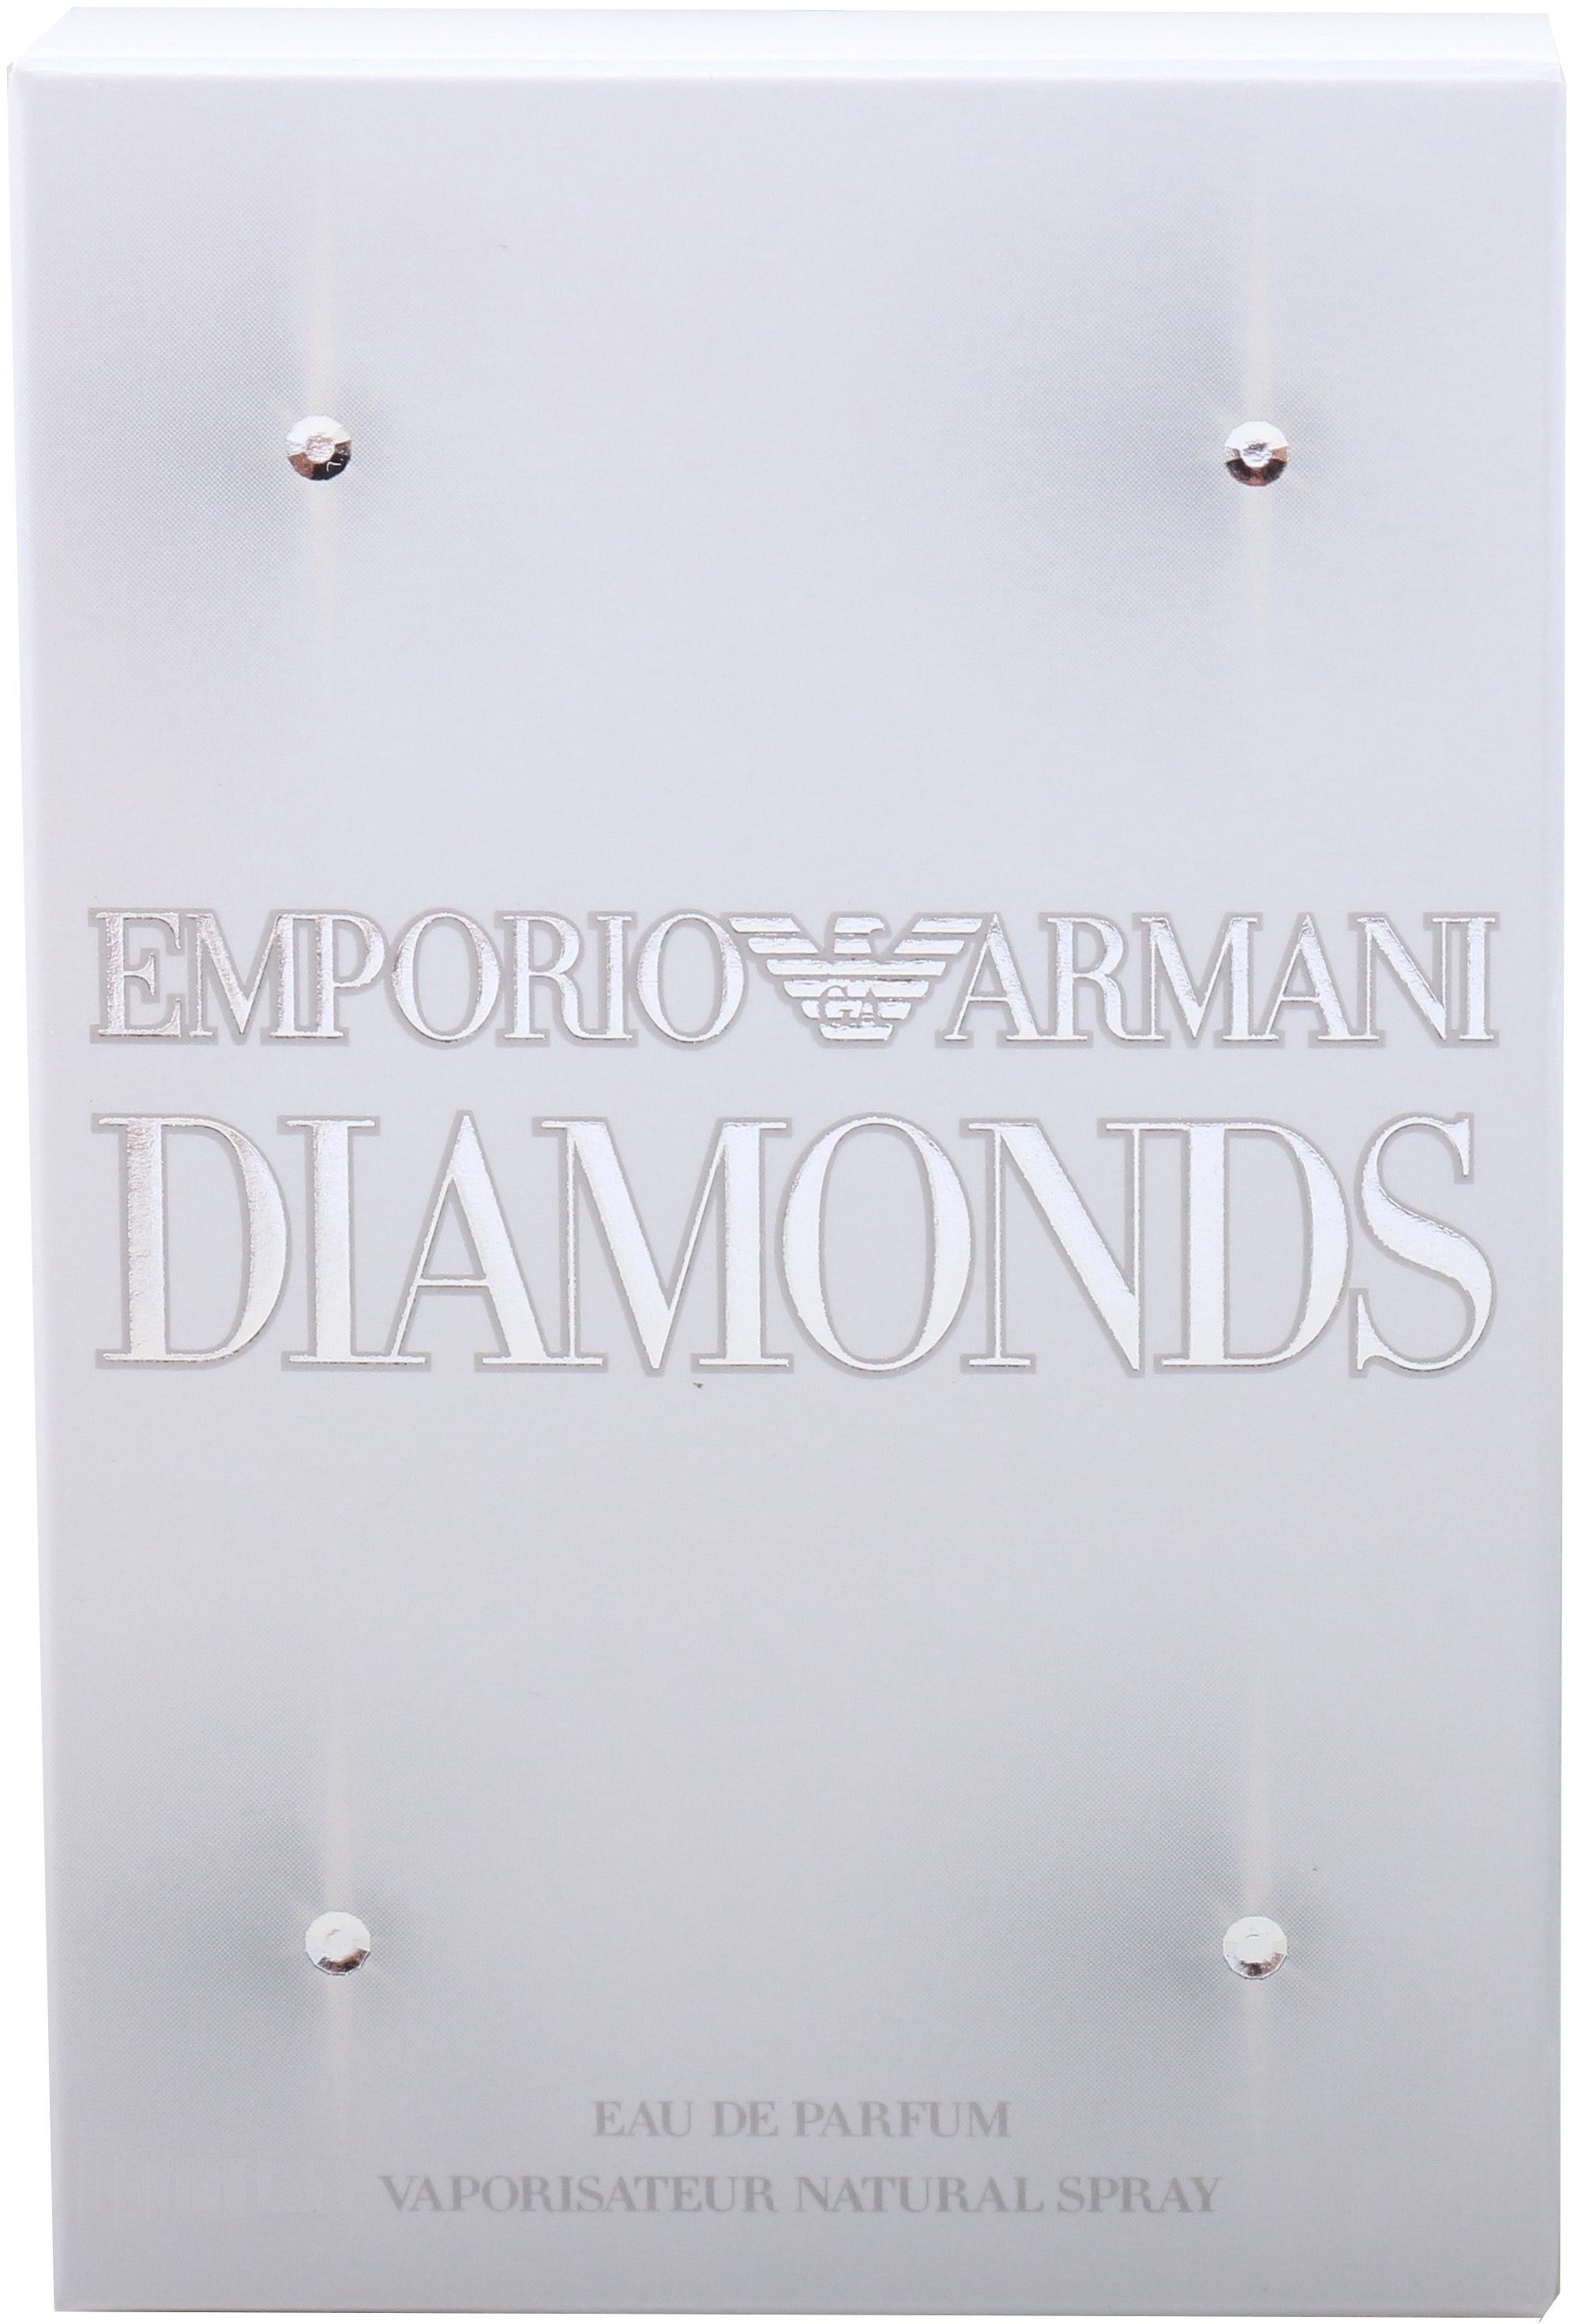 Giorgio Parfum Diamonds de Armani Eau